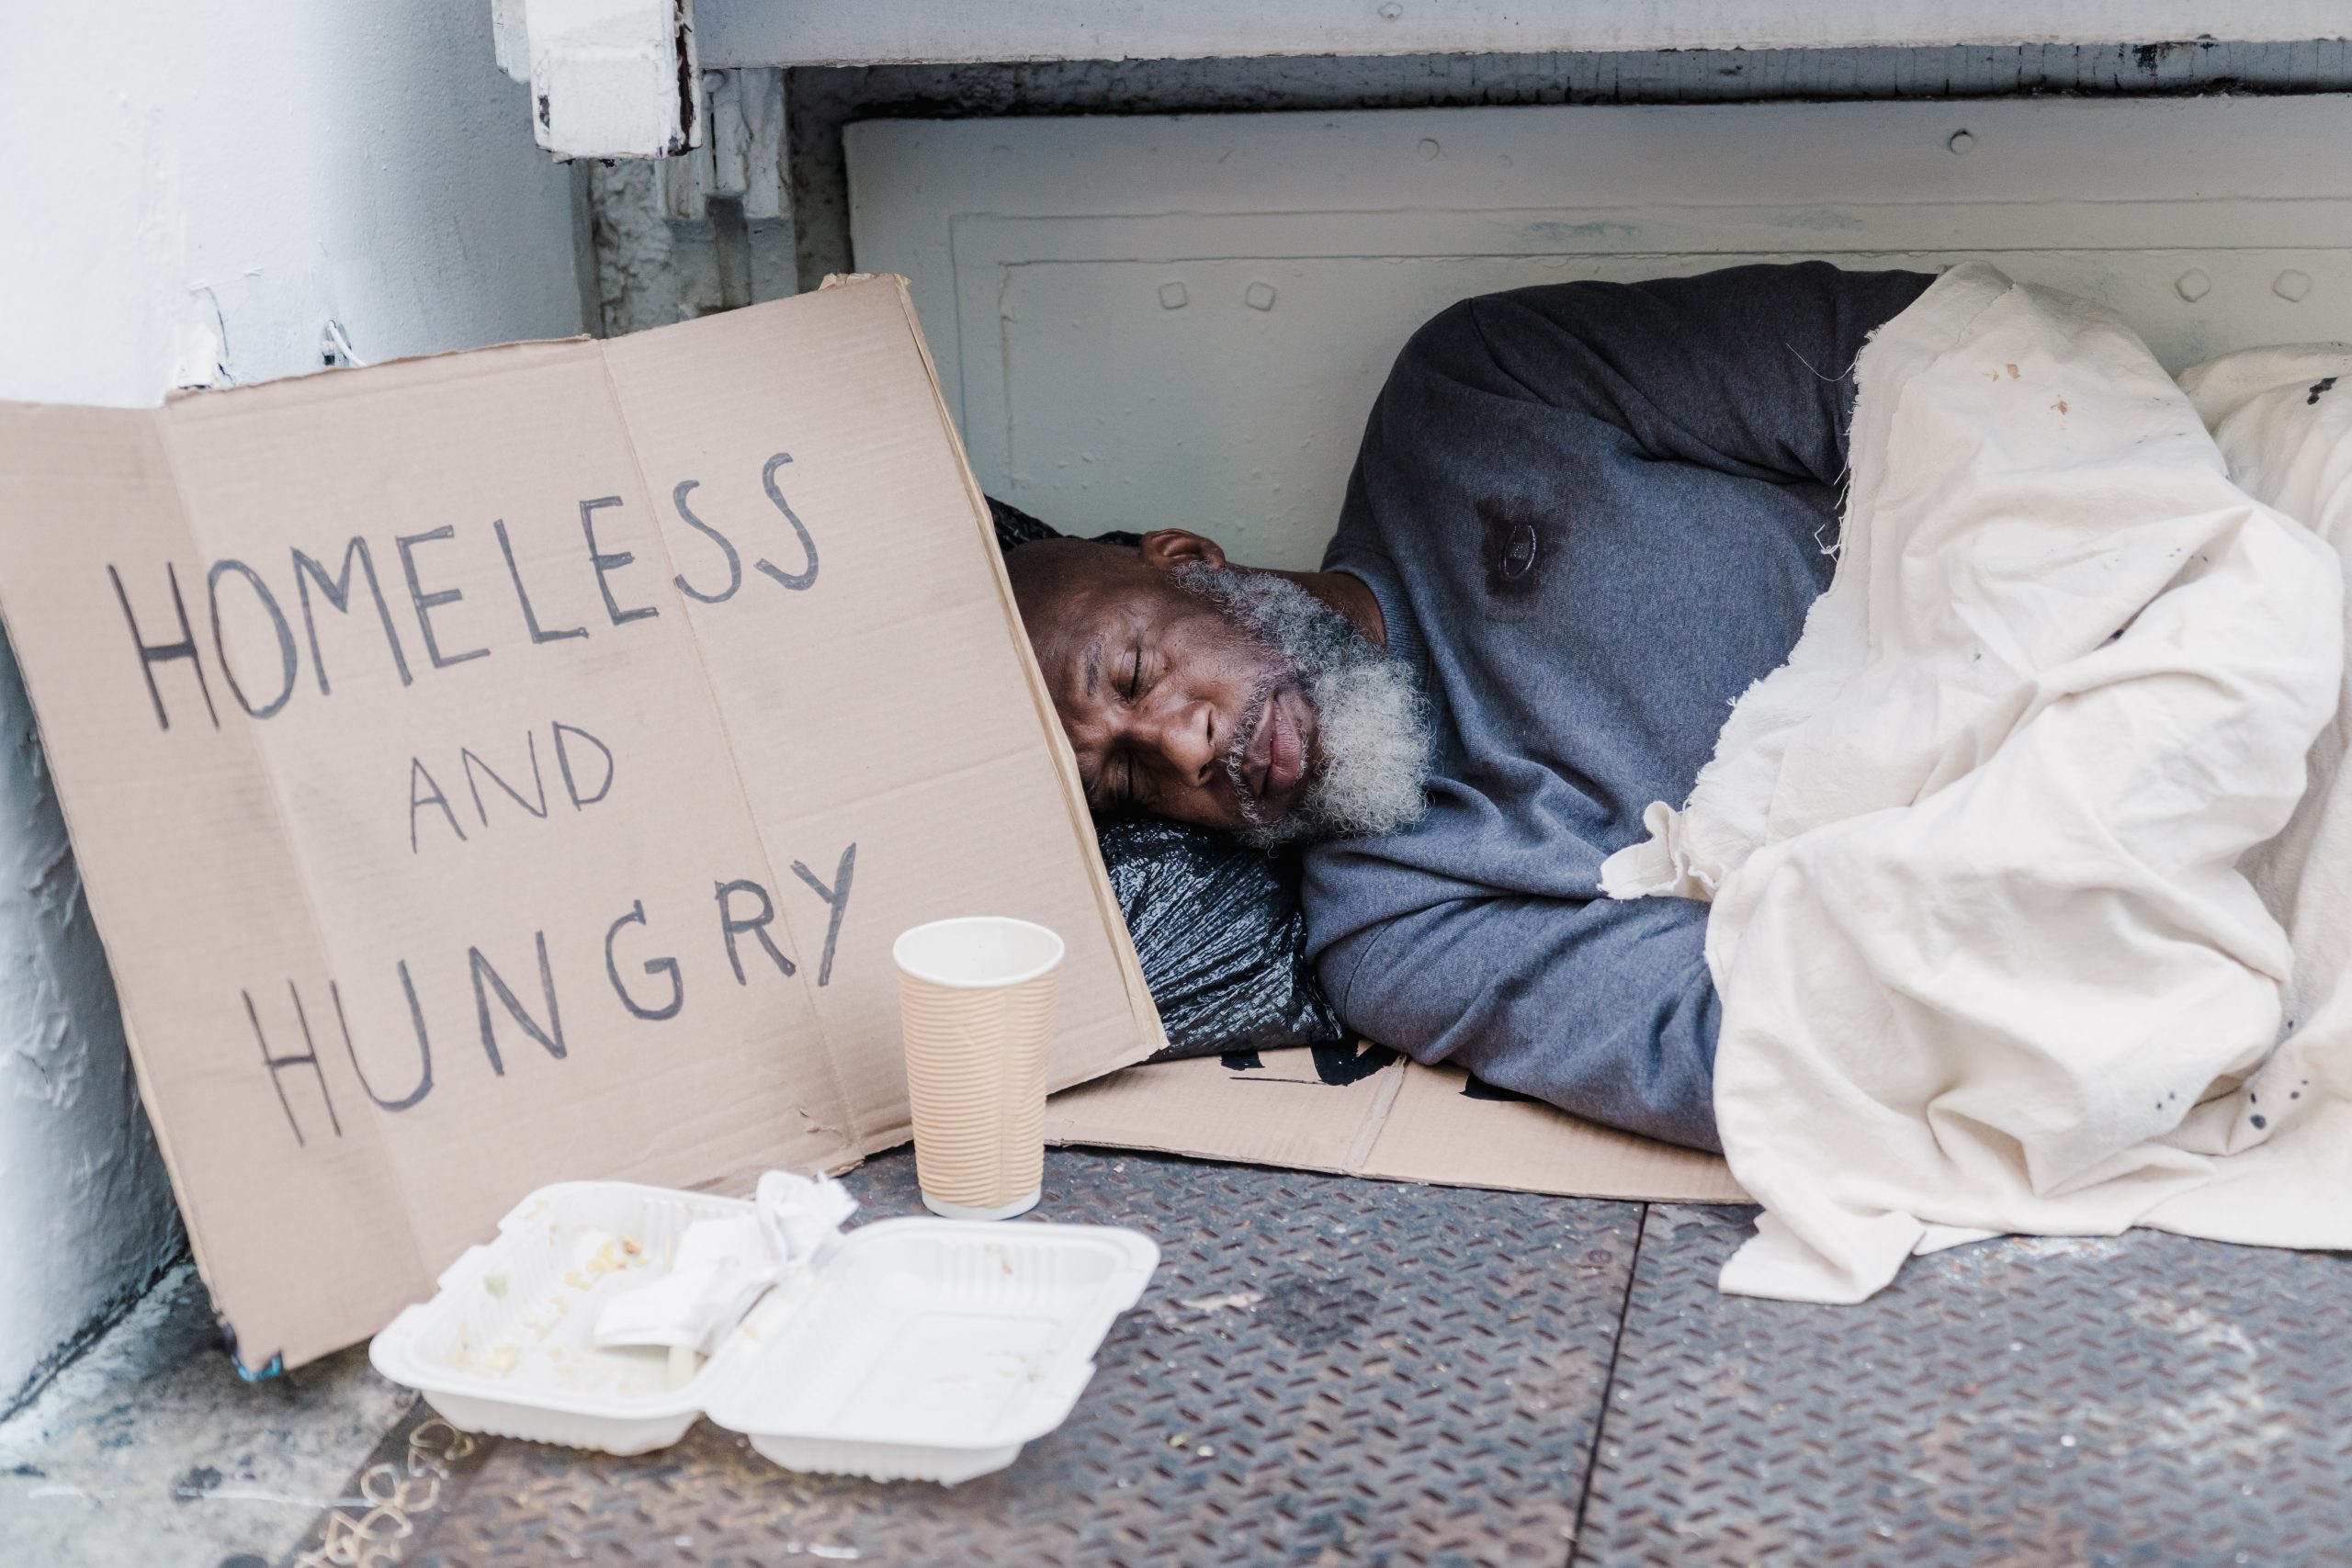 Homeless charities